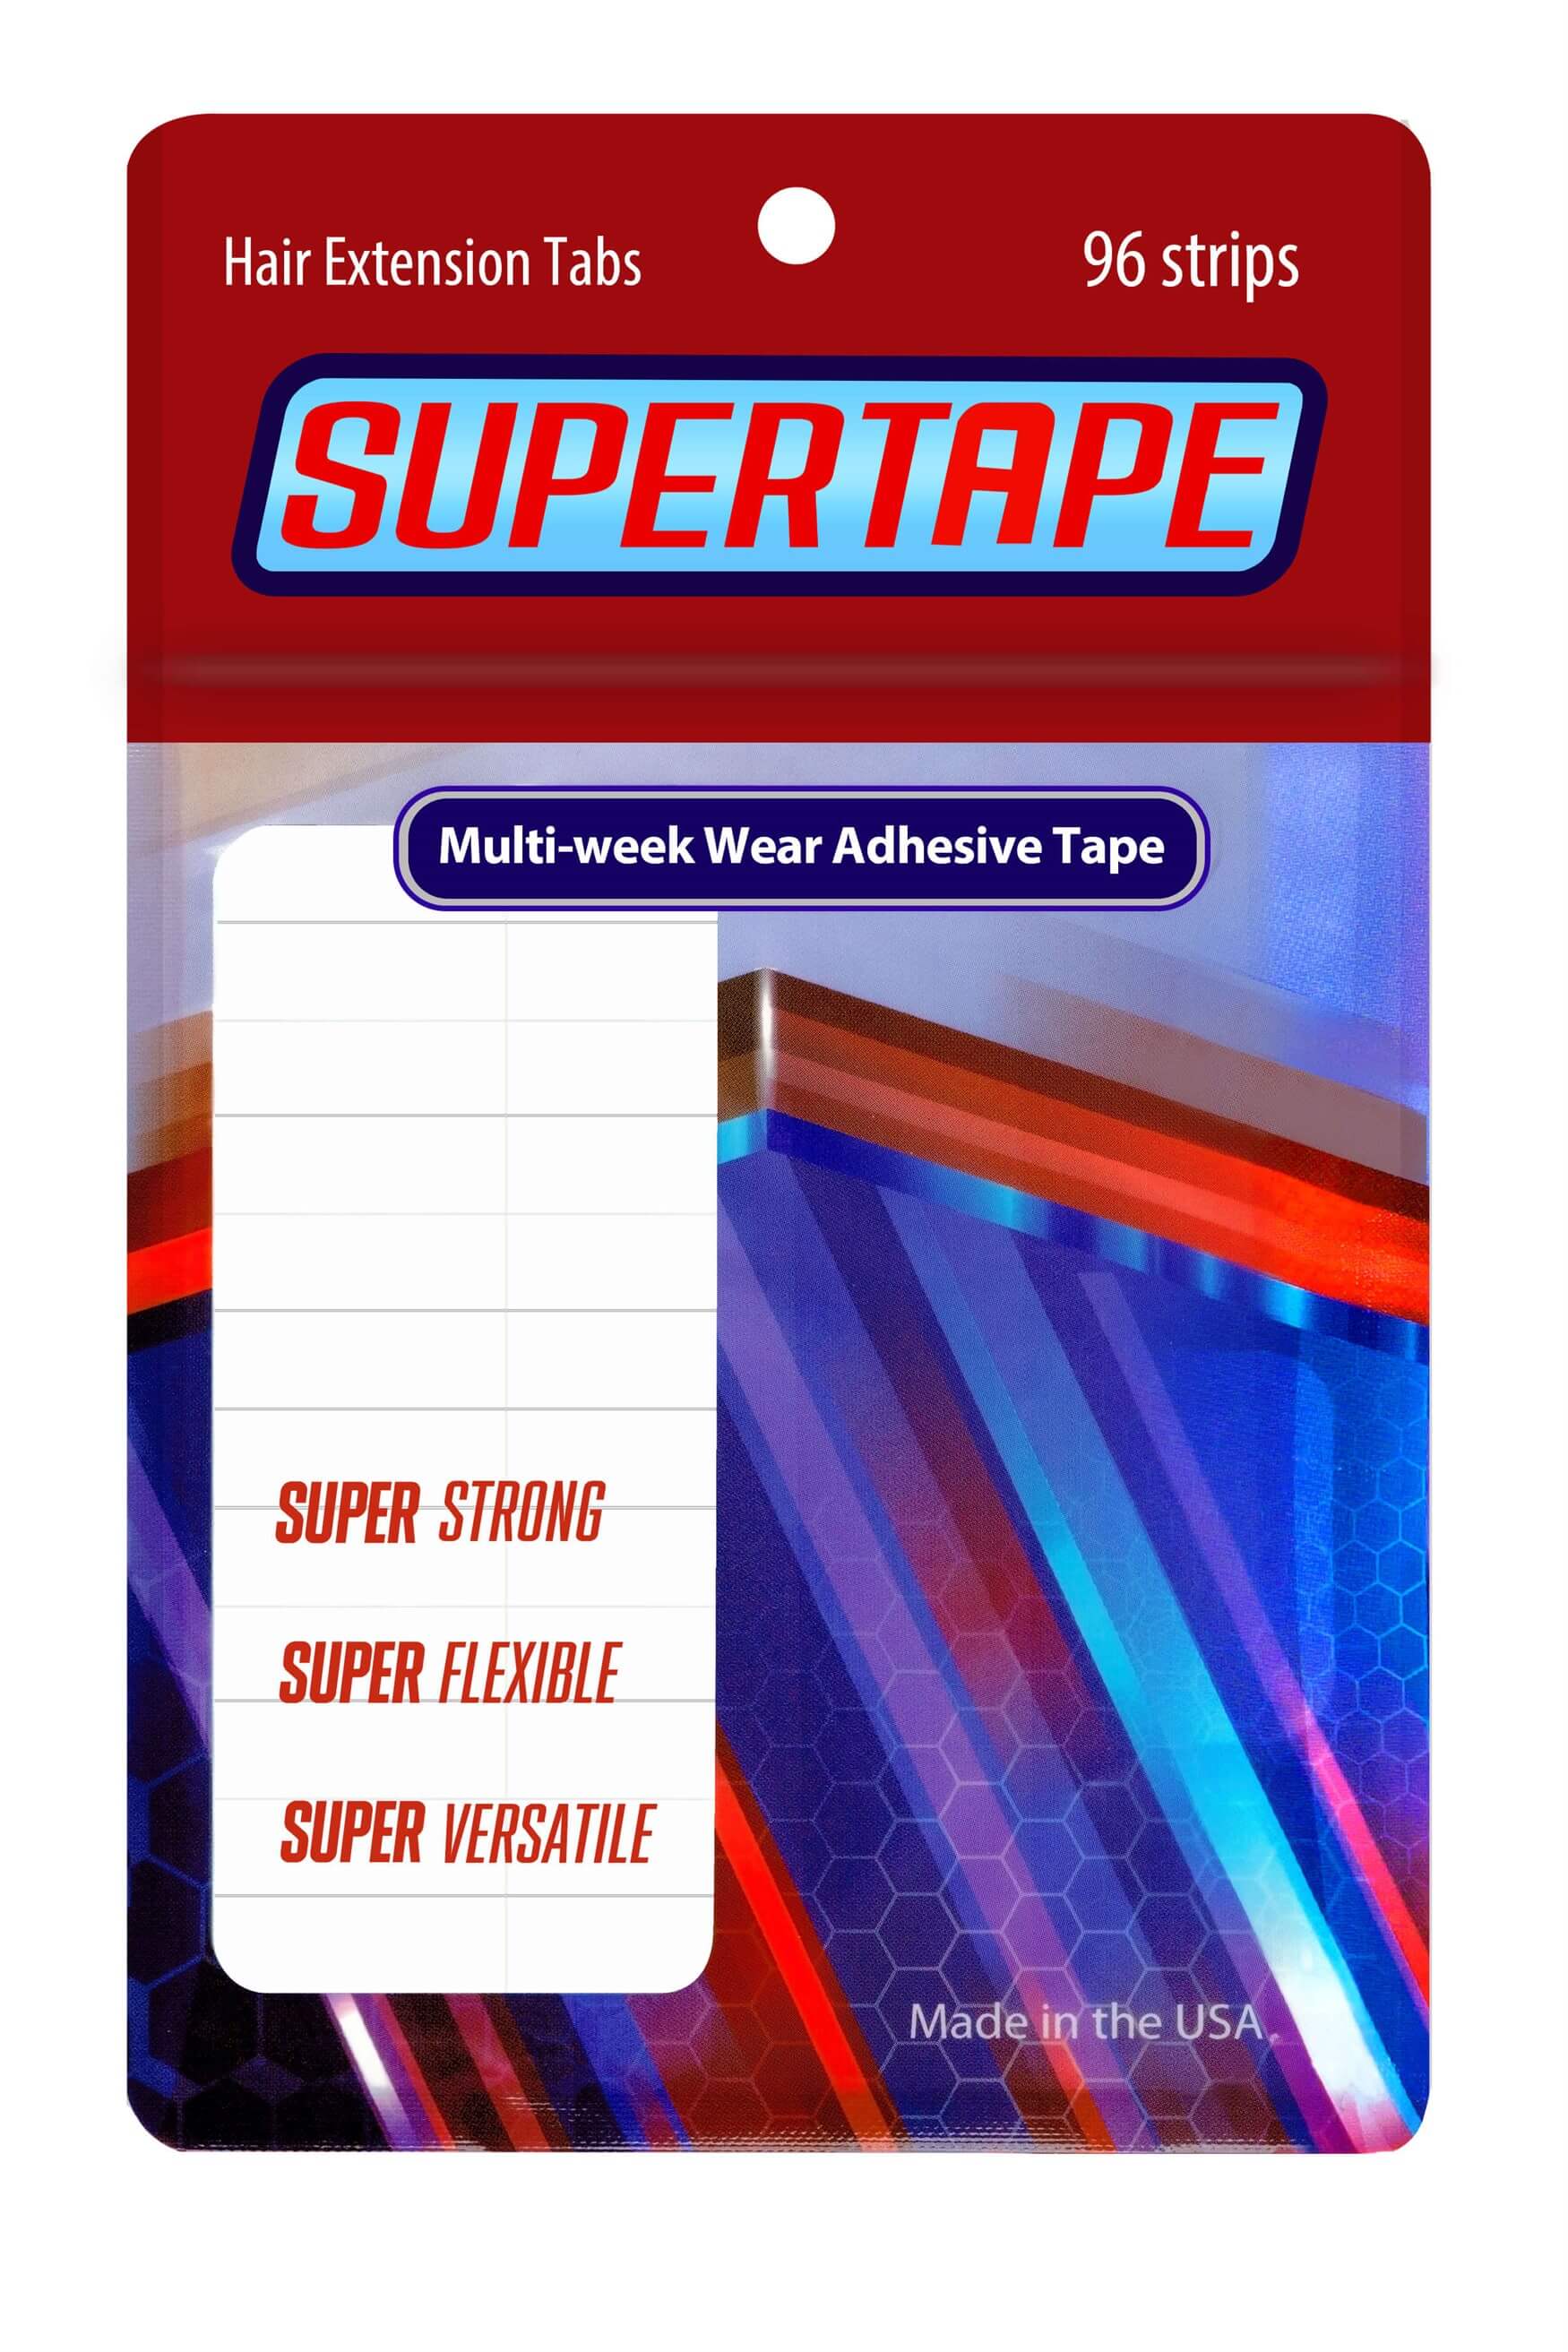 True Tape Super Hair Extension Tape - Bant Kaynak Bandı (4 cm x 0,8 cm) 96 Adet